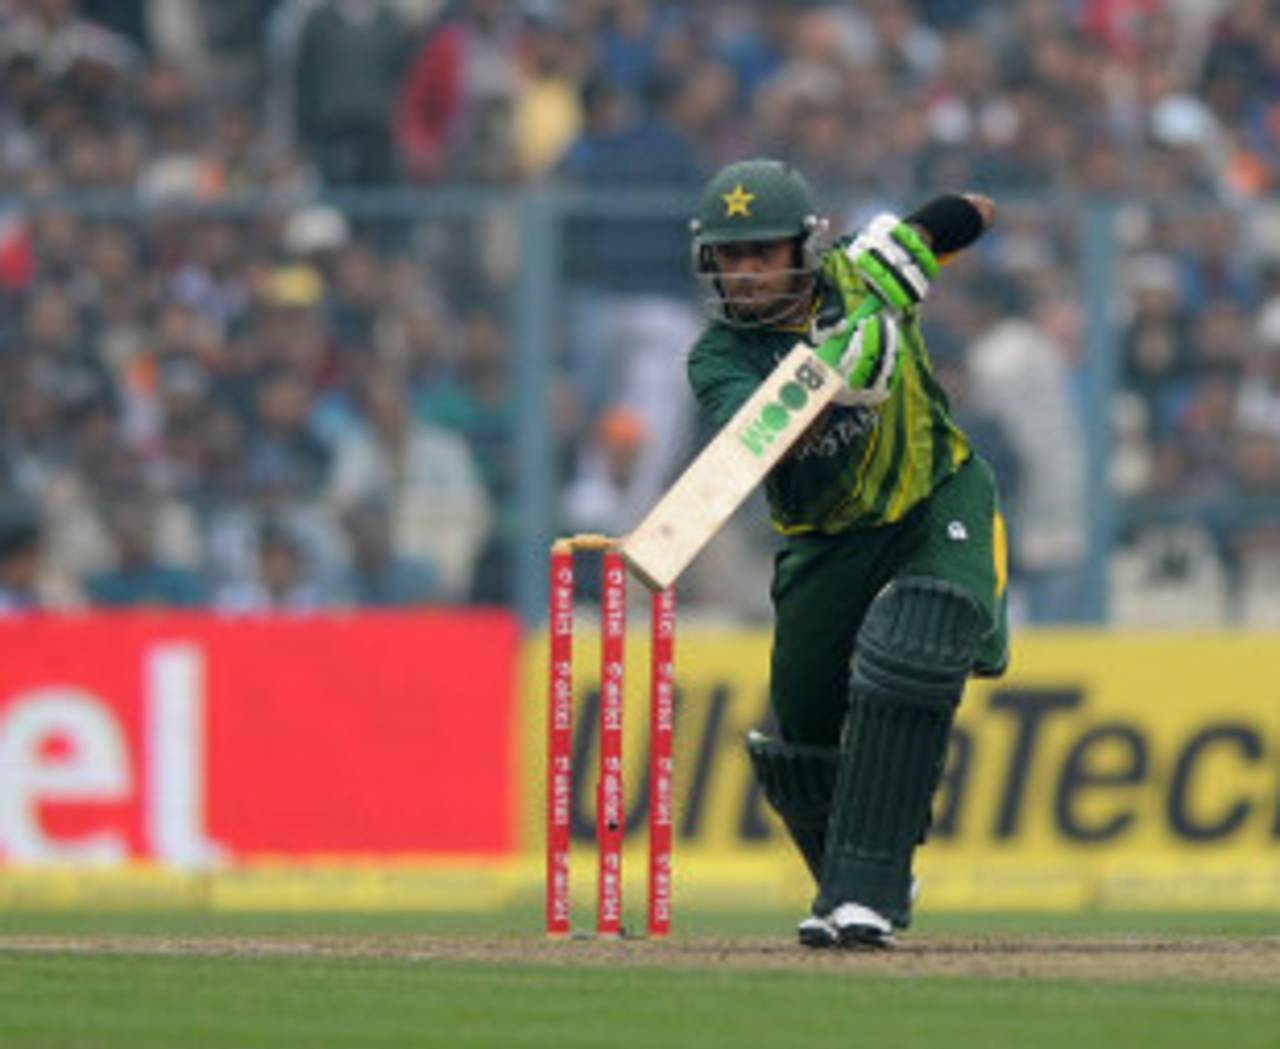 Mohammad Hafeez struck a quickfire 61 from 44 balls to help Pakistan beat India&nbsp;&nbsp;&bull;&nbsp;&nbsp;BCCI